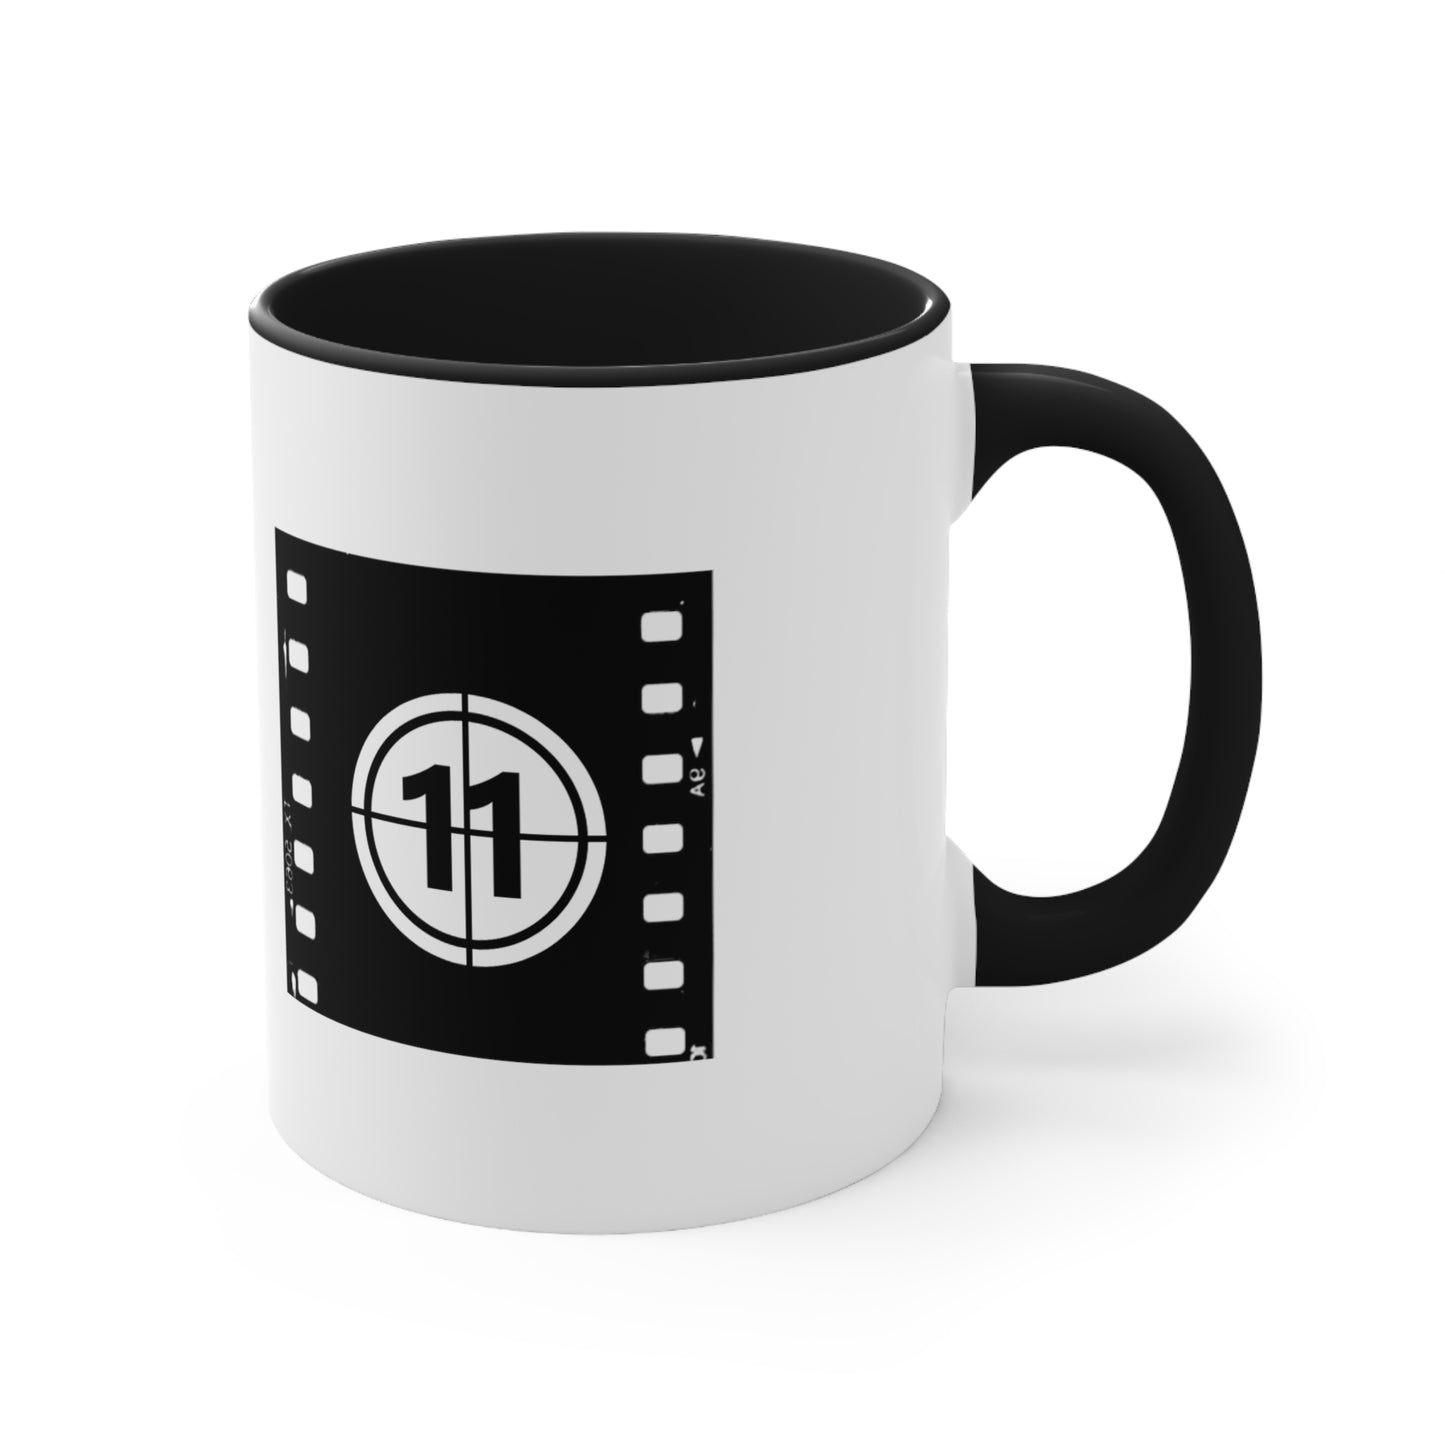 Film At 11 Coffee Mug